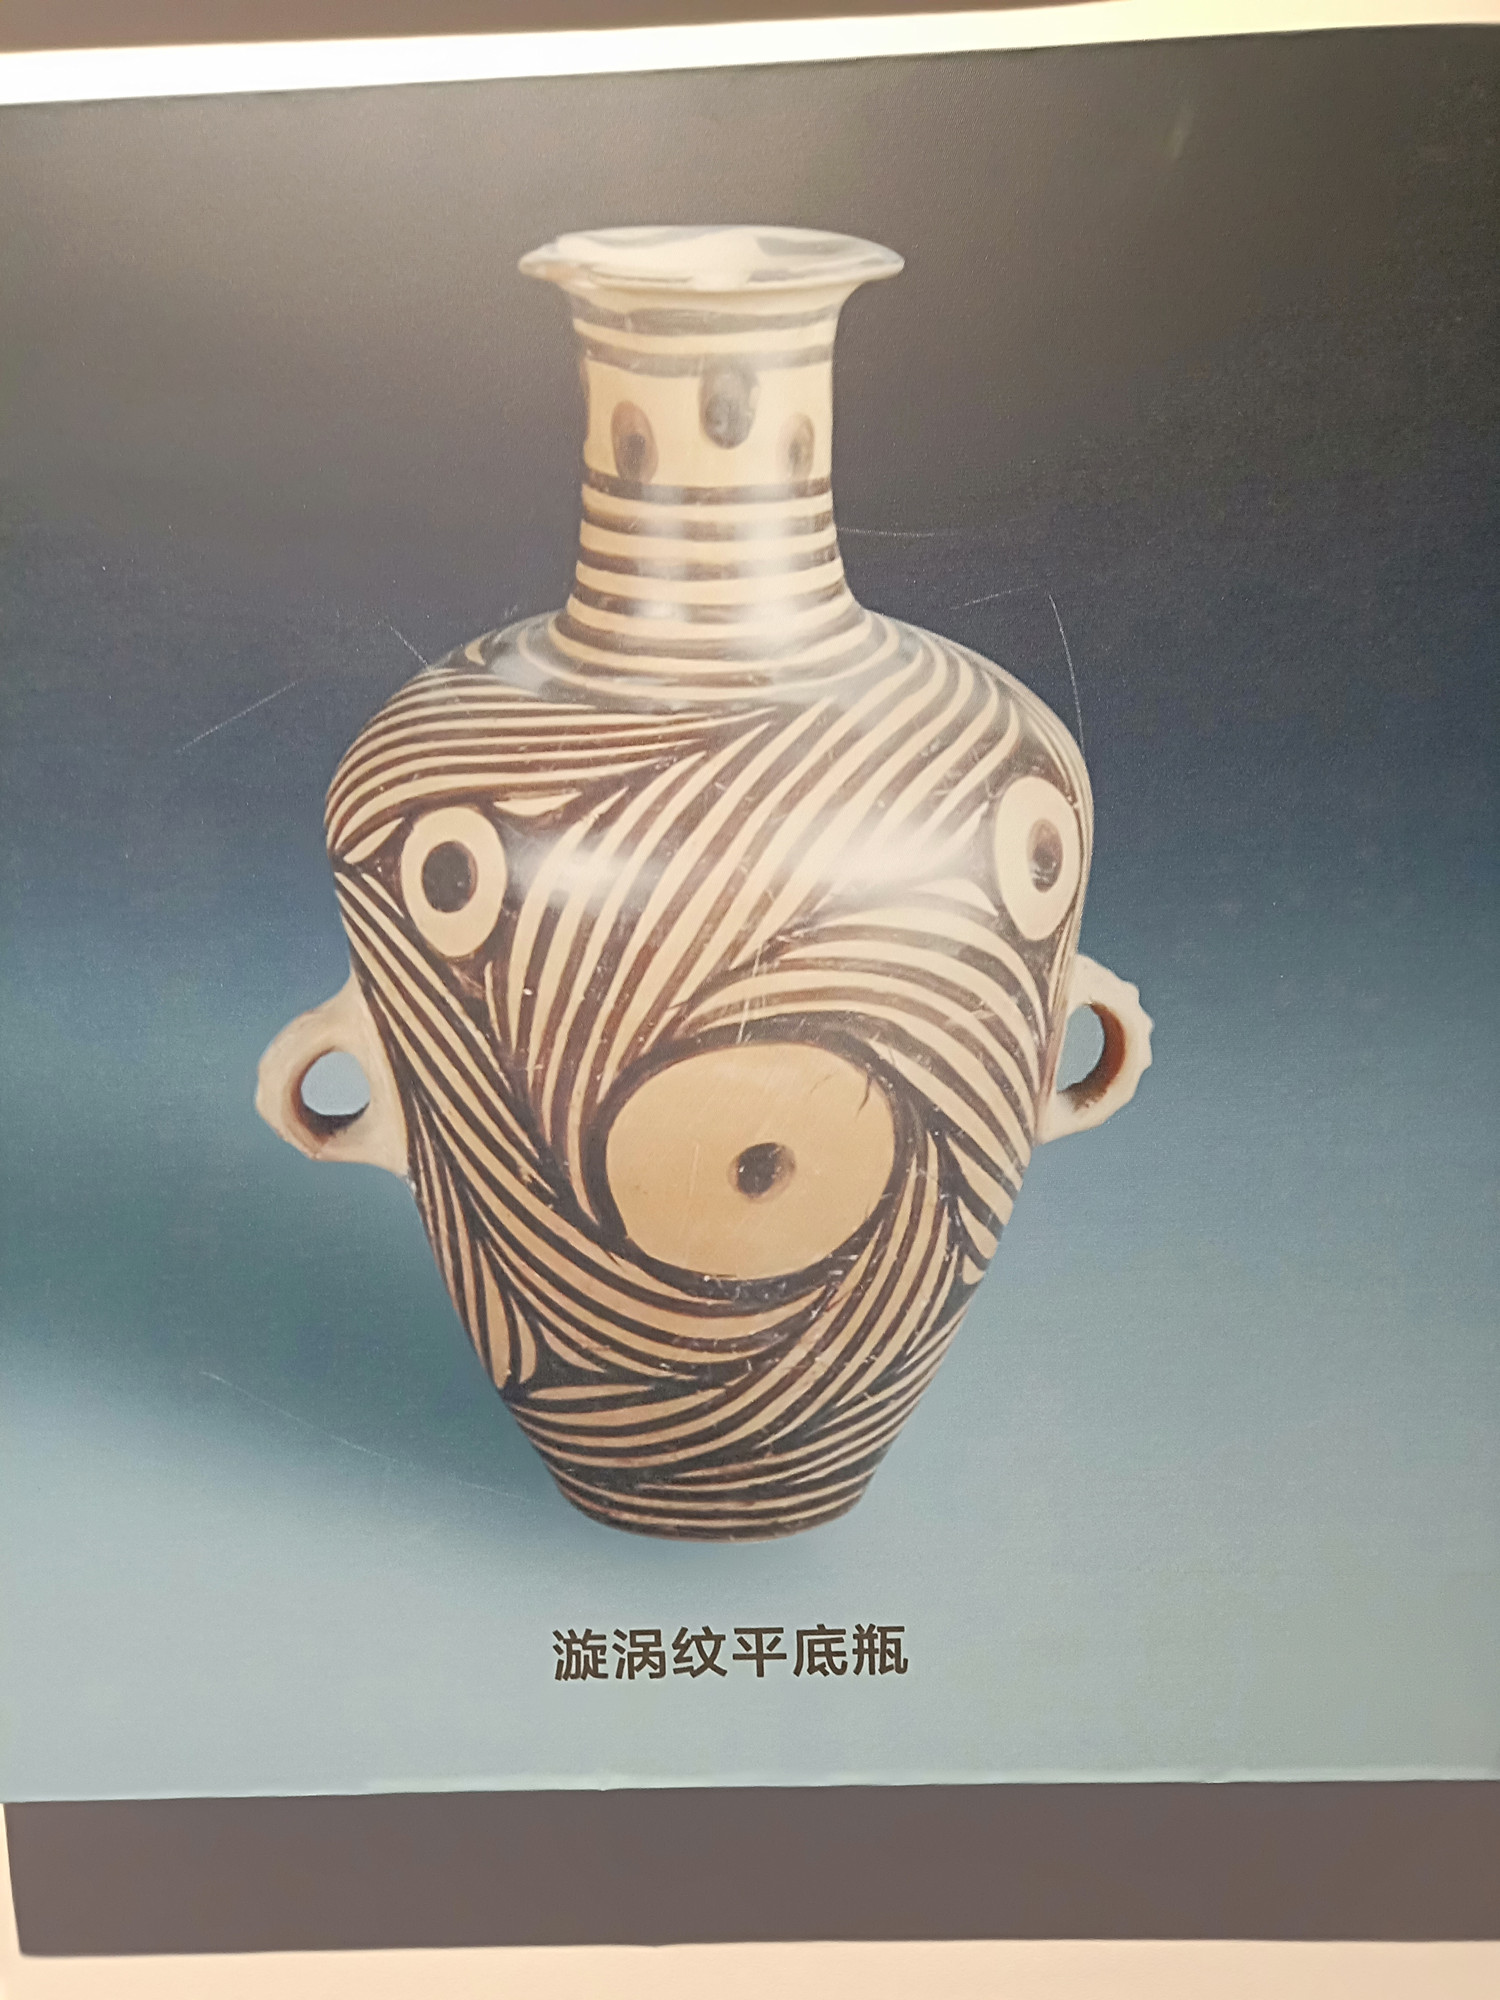 世界马家窑,命名在临洮,馆藏文物丰富,参观者络绎不绝